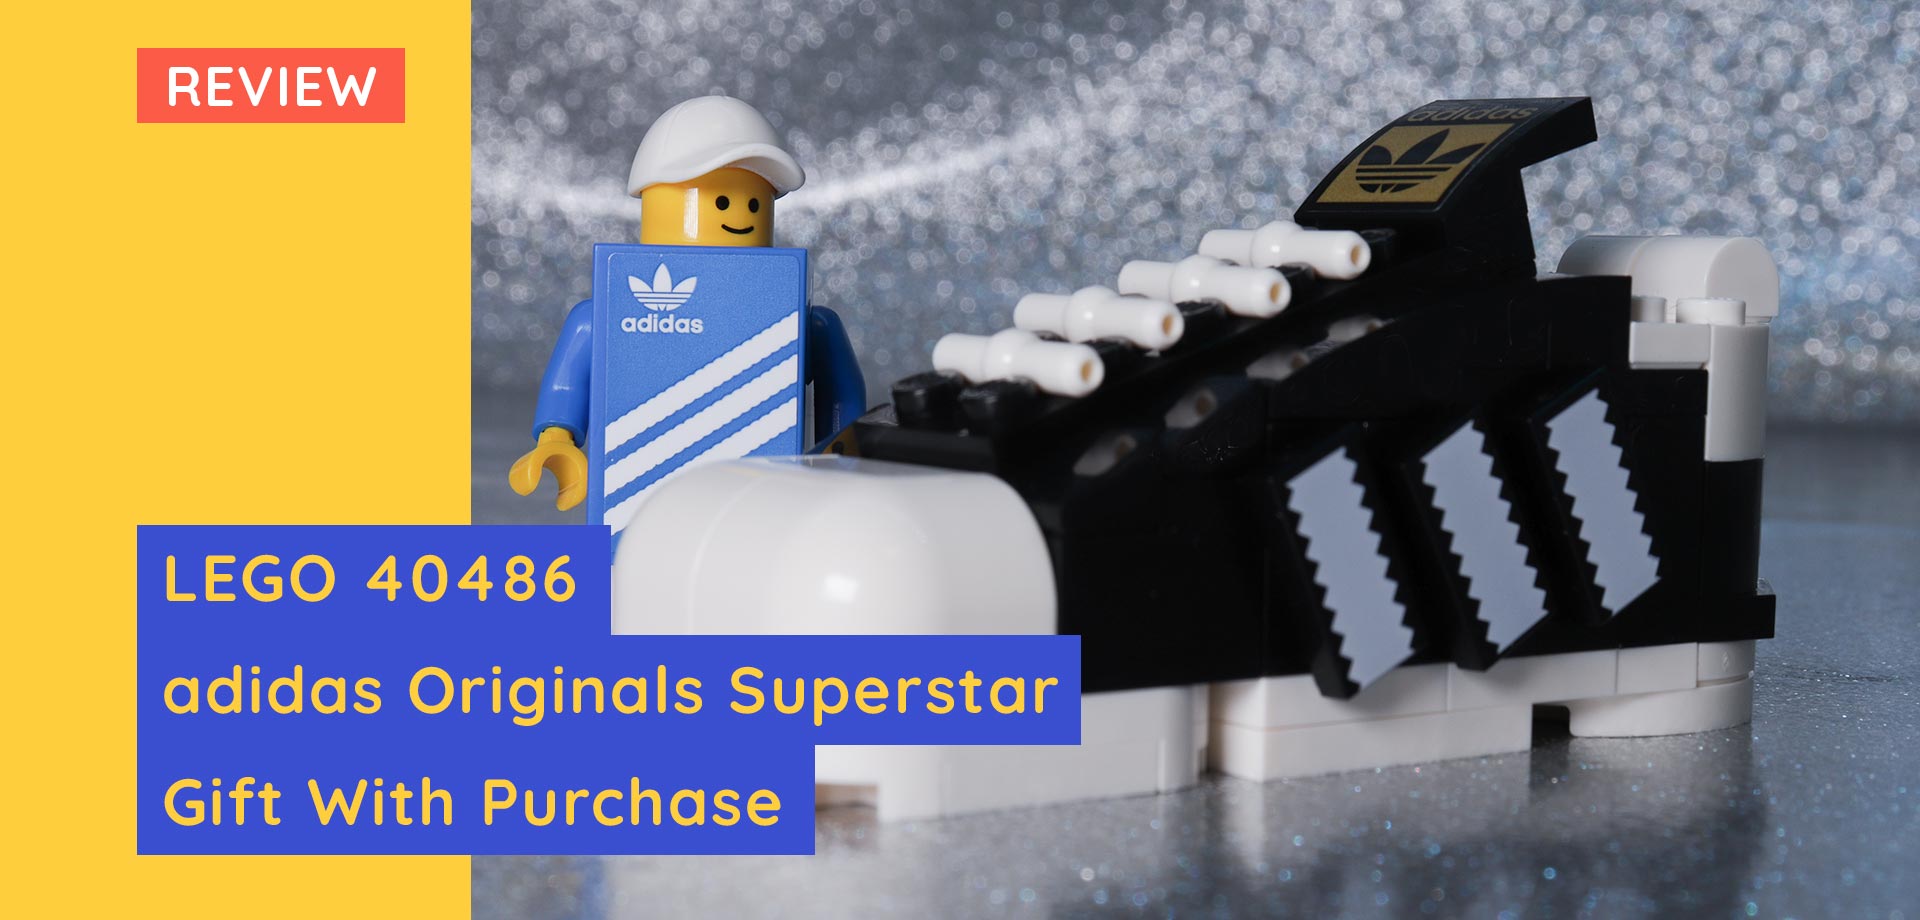 LEGO 40486 Mini Adidas Originals Superstar review